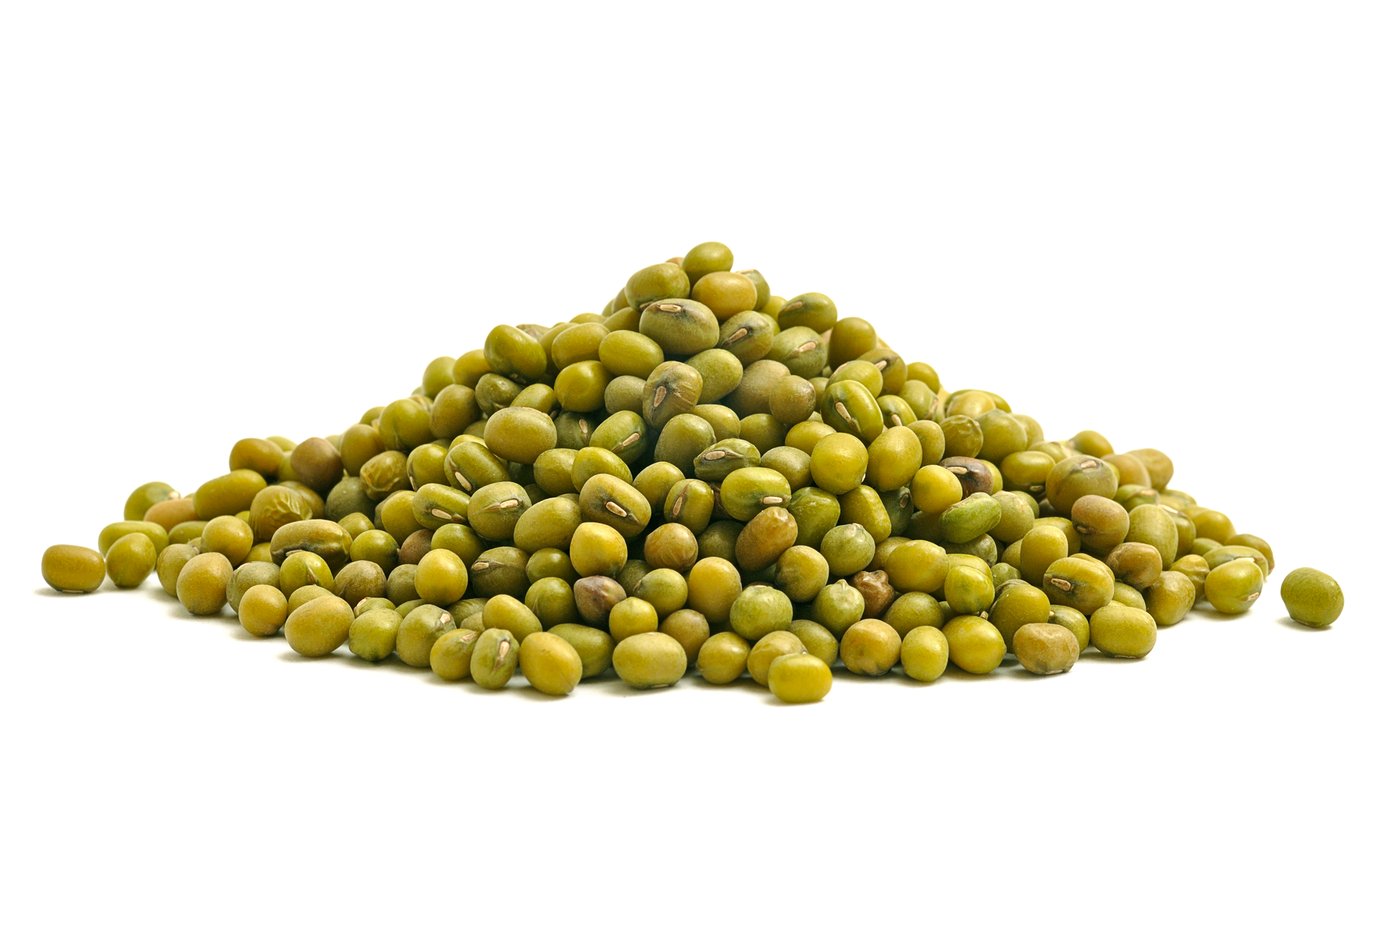 Organic Mung Beans image zoom